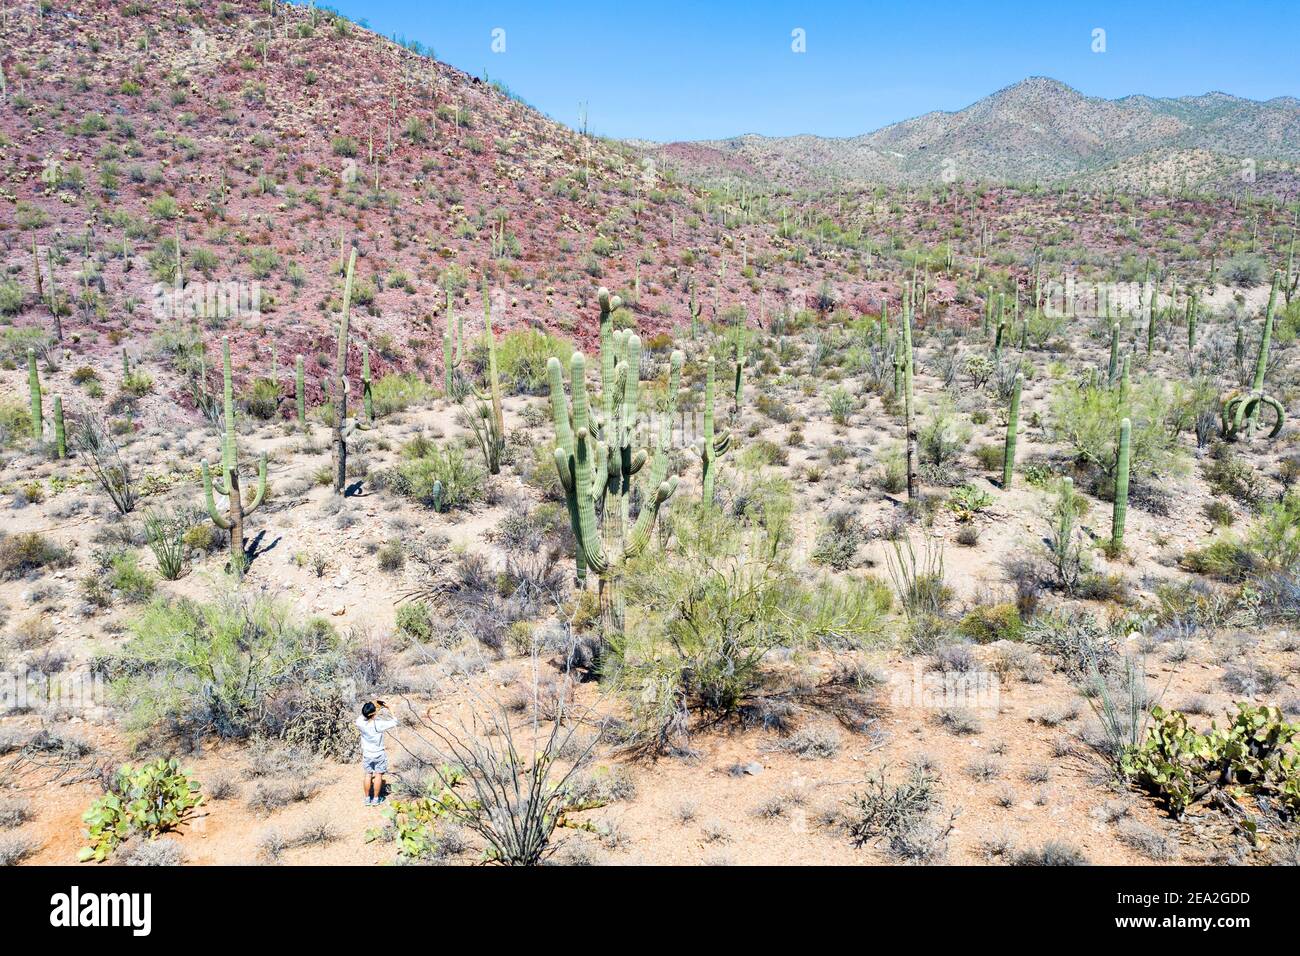 Tourst ntaking a photo of a Saguaro cactus, Tucson Mountain Park, Tuscon AZ, USA Stock Photo